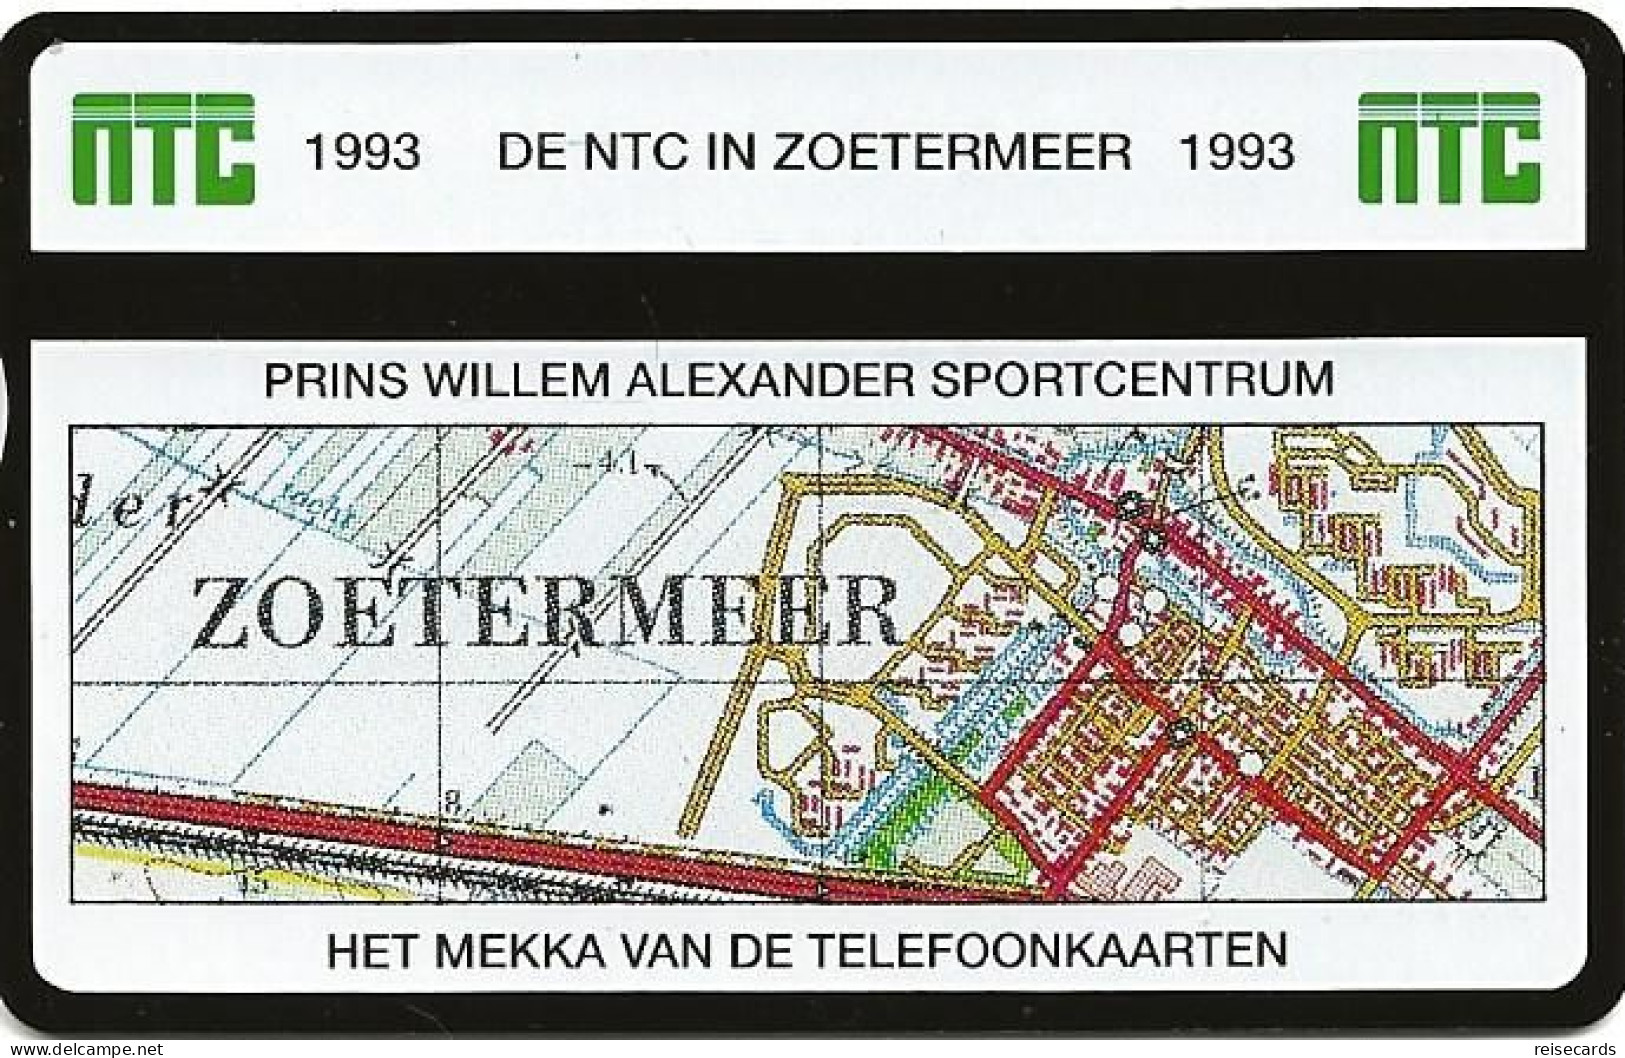 Netherlands: Ptt Telecom - 1993 301K NTC Telefoonkaarten Exhibition Zoetermeer 93. Mint - Privées